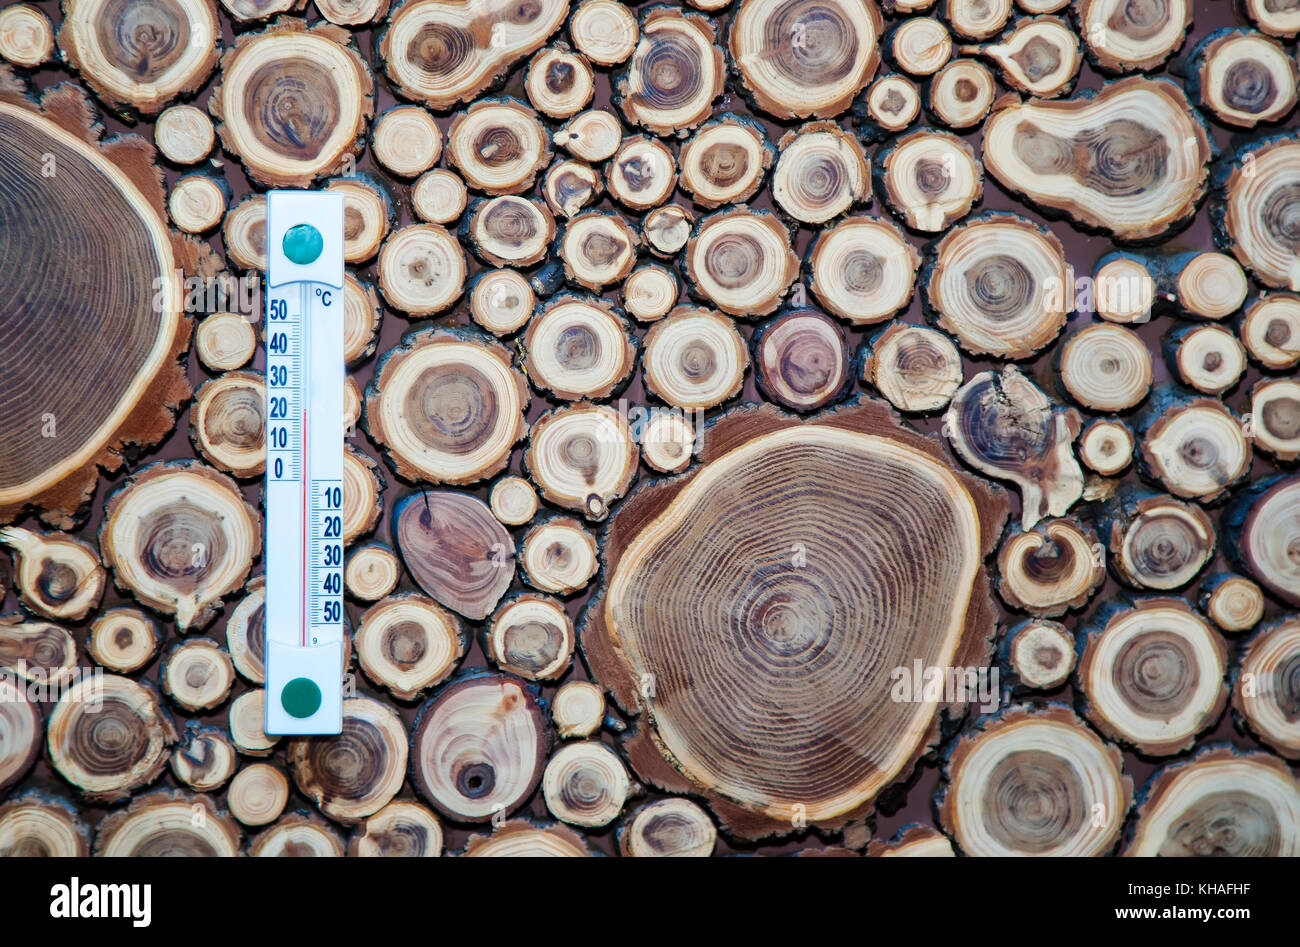 Holz Thermometer kalibriert in Grad Celsius auf der hölzernen Wand, Stockfoto